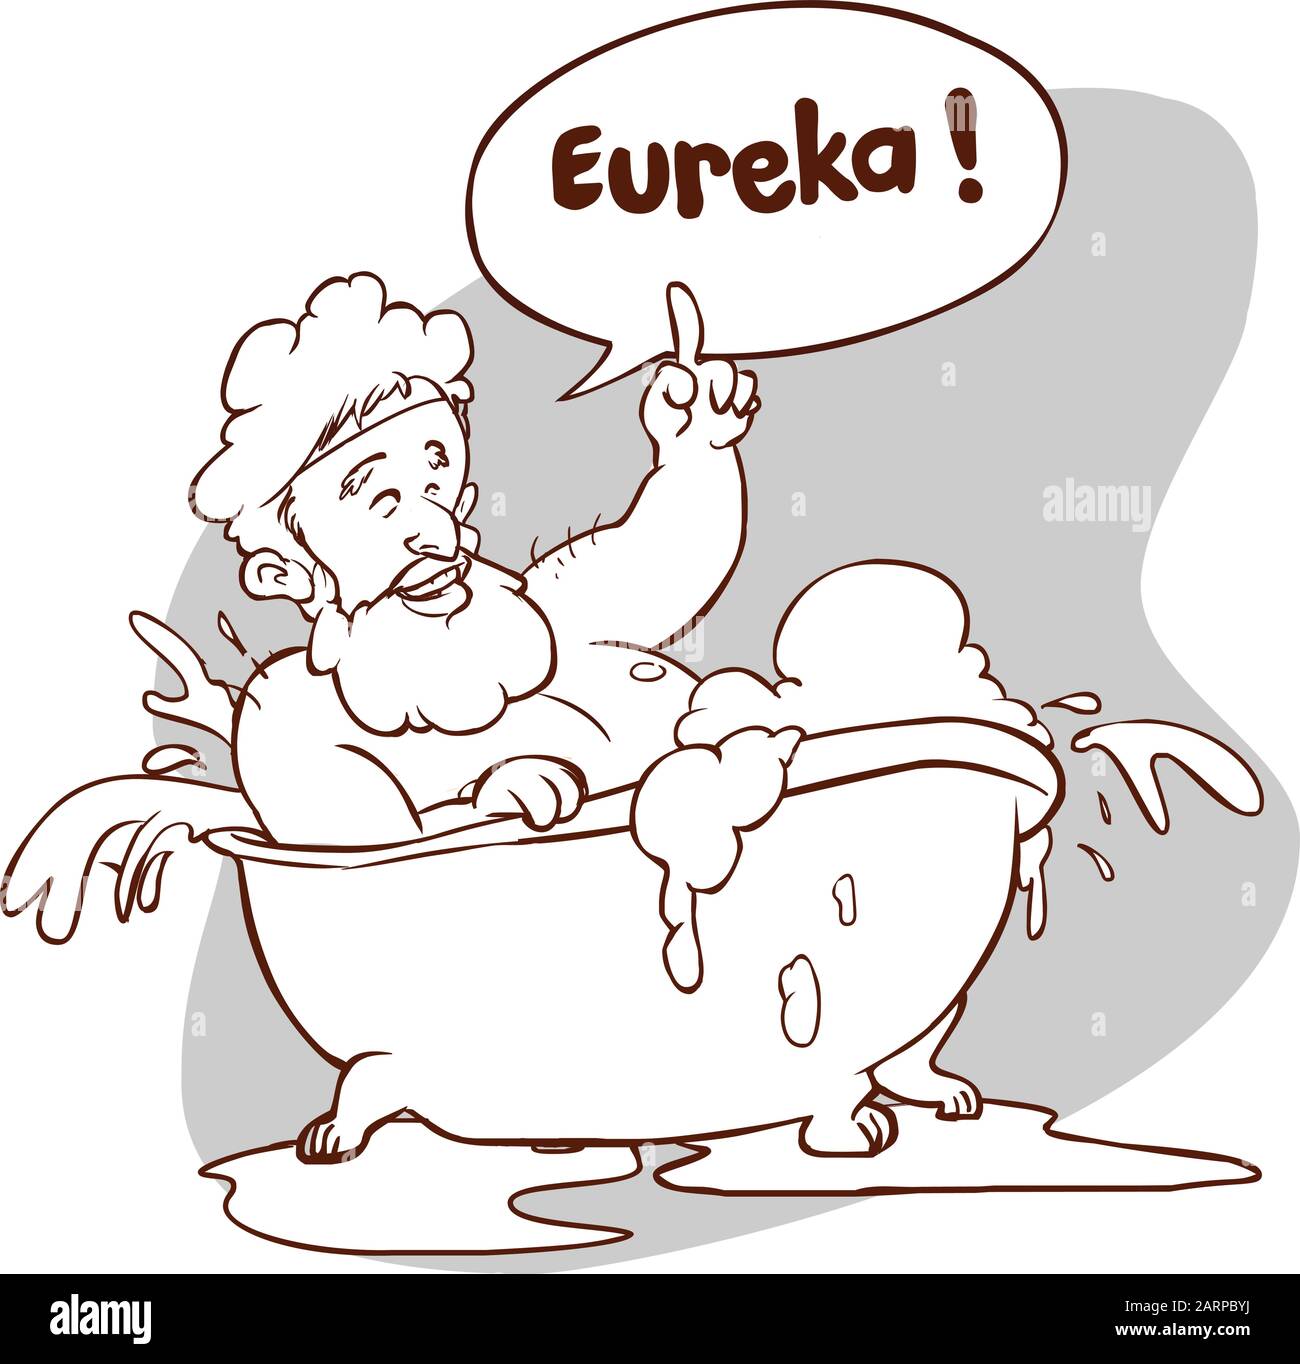 Illustrazione vettoriale di un Archimede in bagno. Thumbs su eureka. Matematico greco antico, fisico. Illustrazione Vettoriale